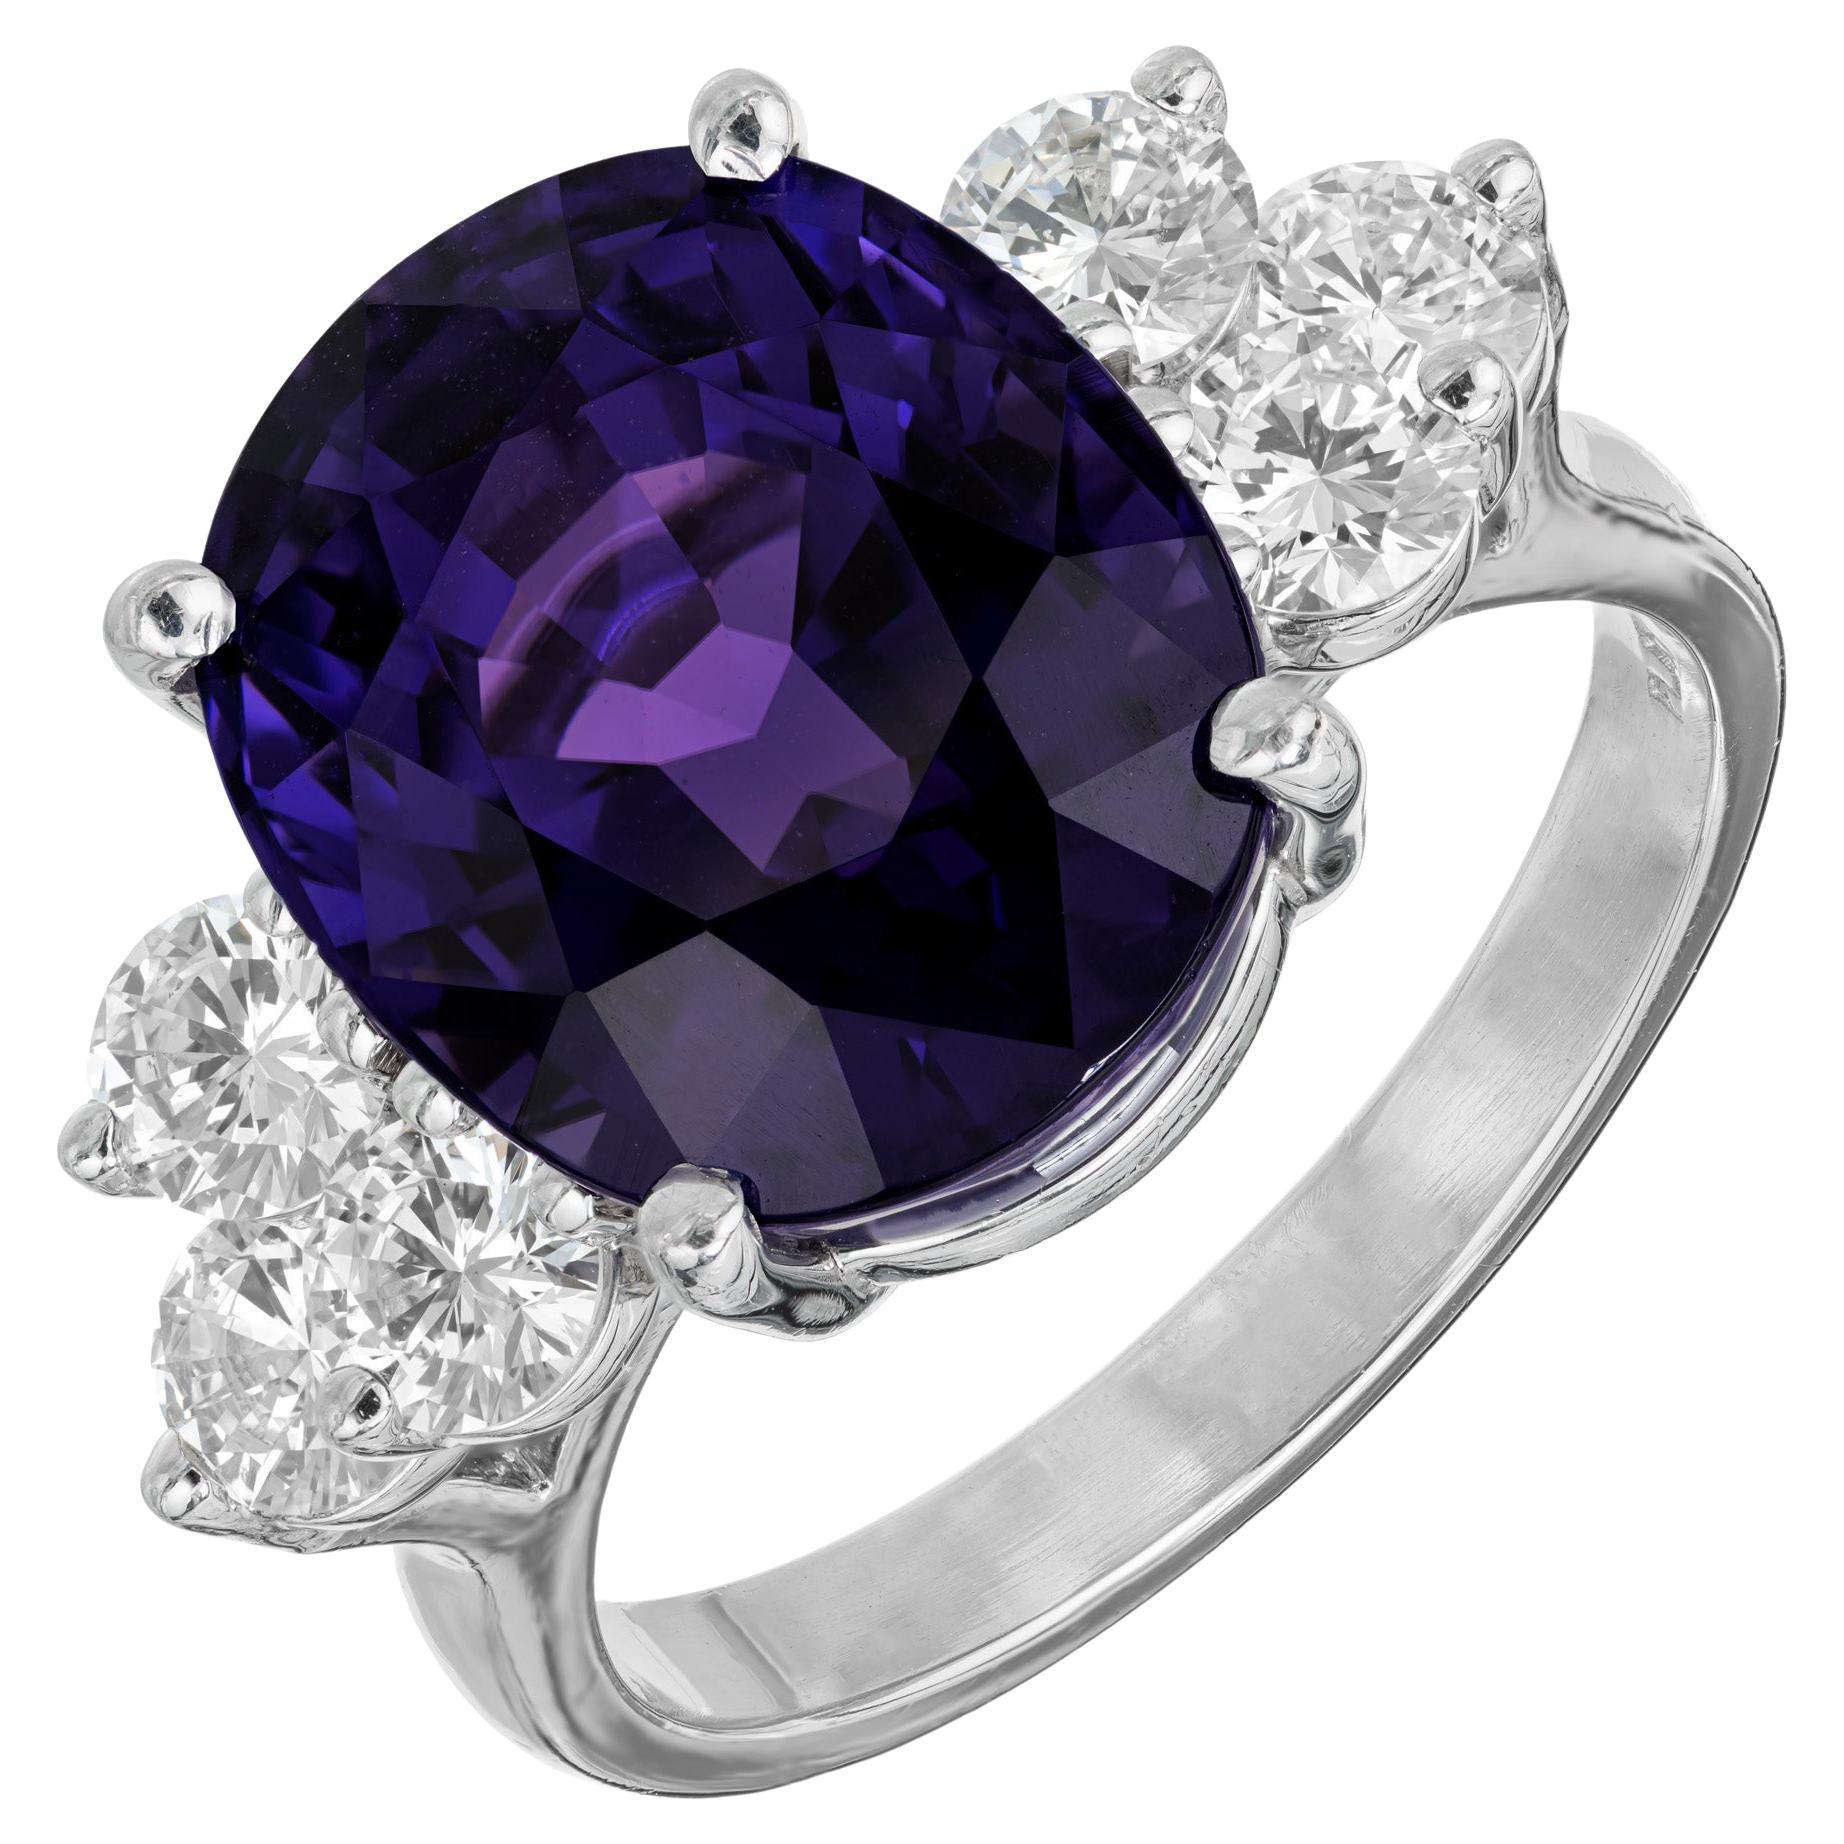 Blau-lila Farbwechsel Saphir und Diamanten Verlobungsring. AGTA-zertifizierter 12,67 ovaler Saphir in Platin gefasst mit 3 runden Diamanten auf jeder Seite. Natürlicher Farbwechsel, zertifiziert natürlich, keine Hitze. Gefertigt in der Werkstatt von